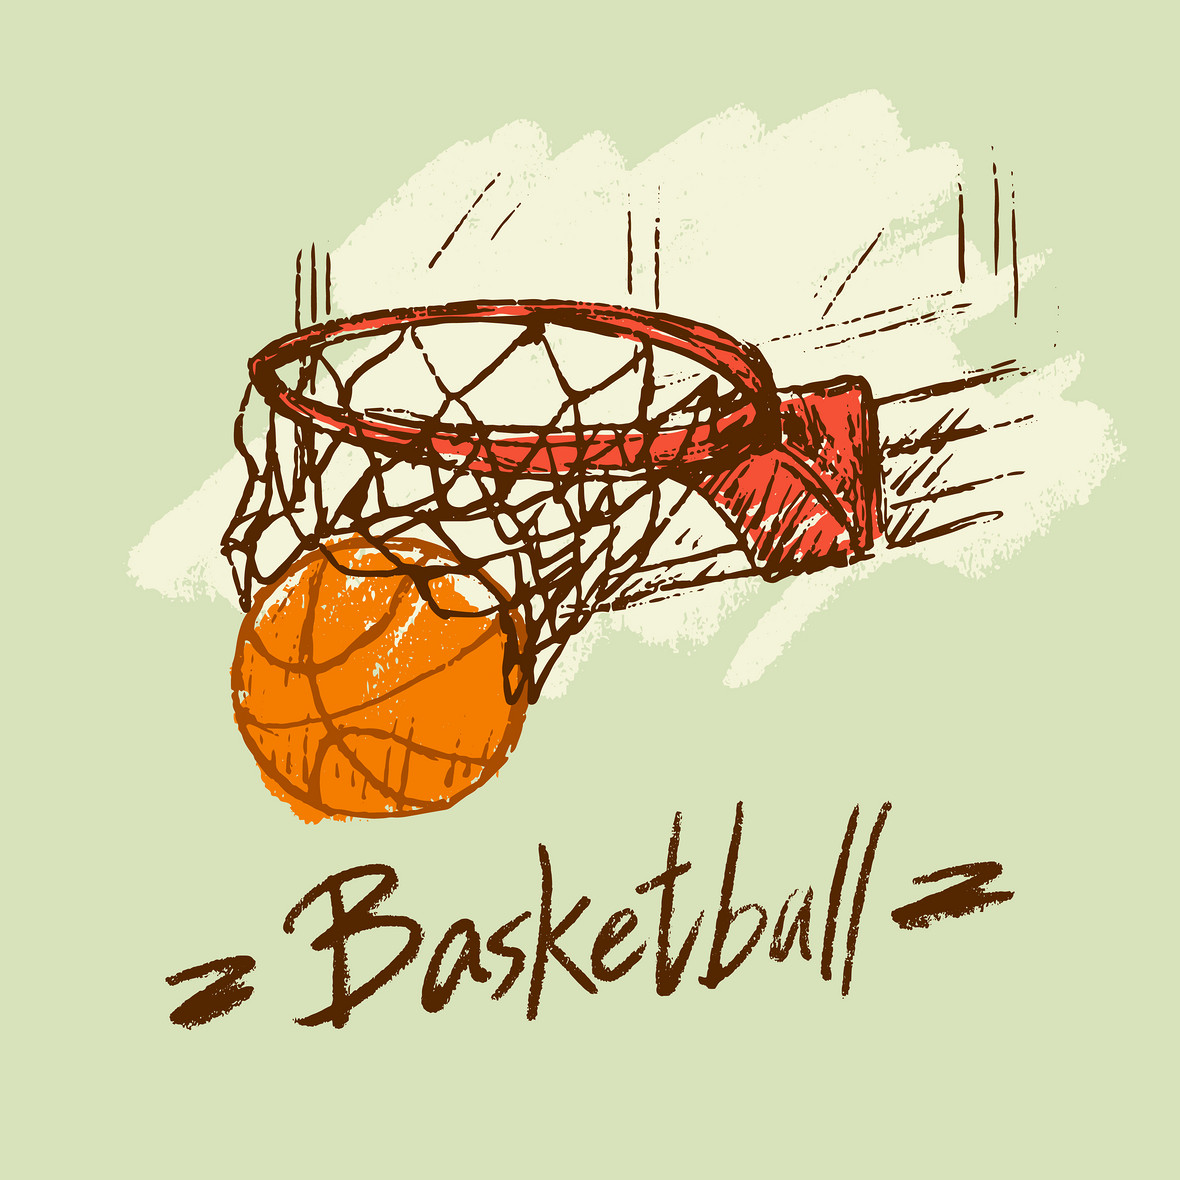 篮球图片简笔画 彩色图片